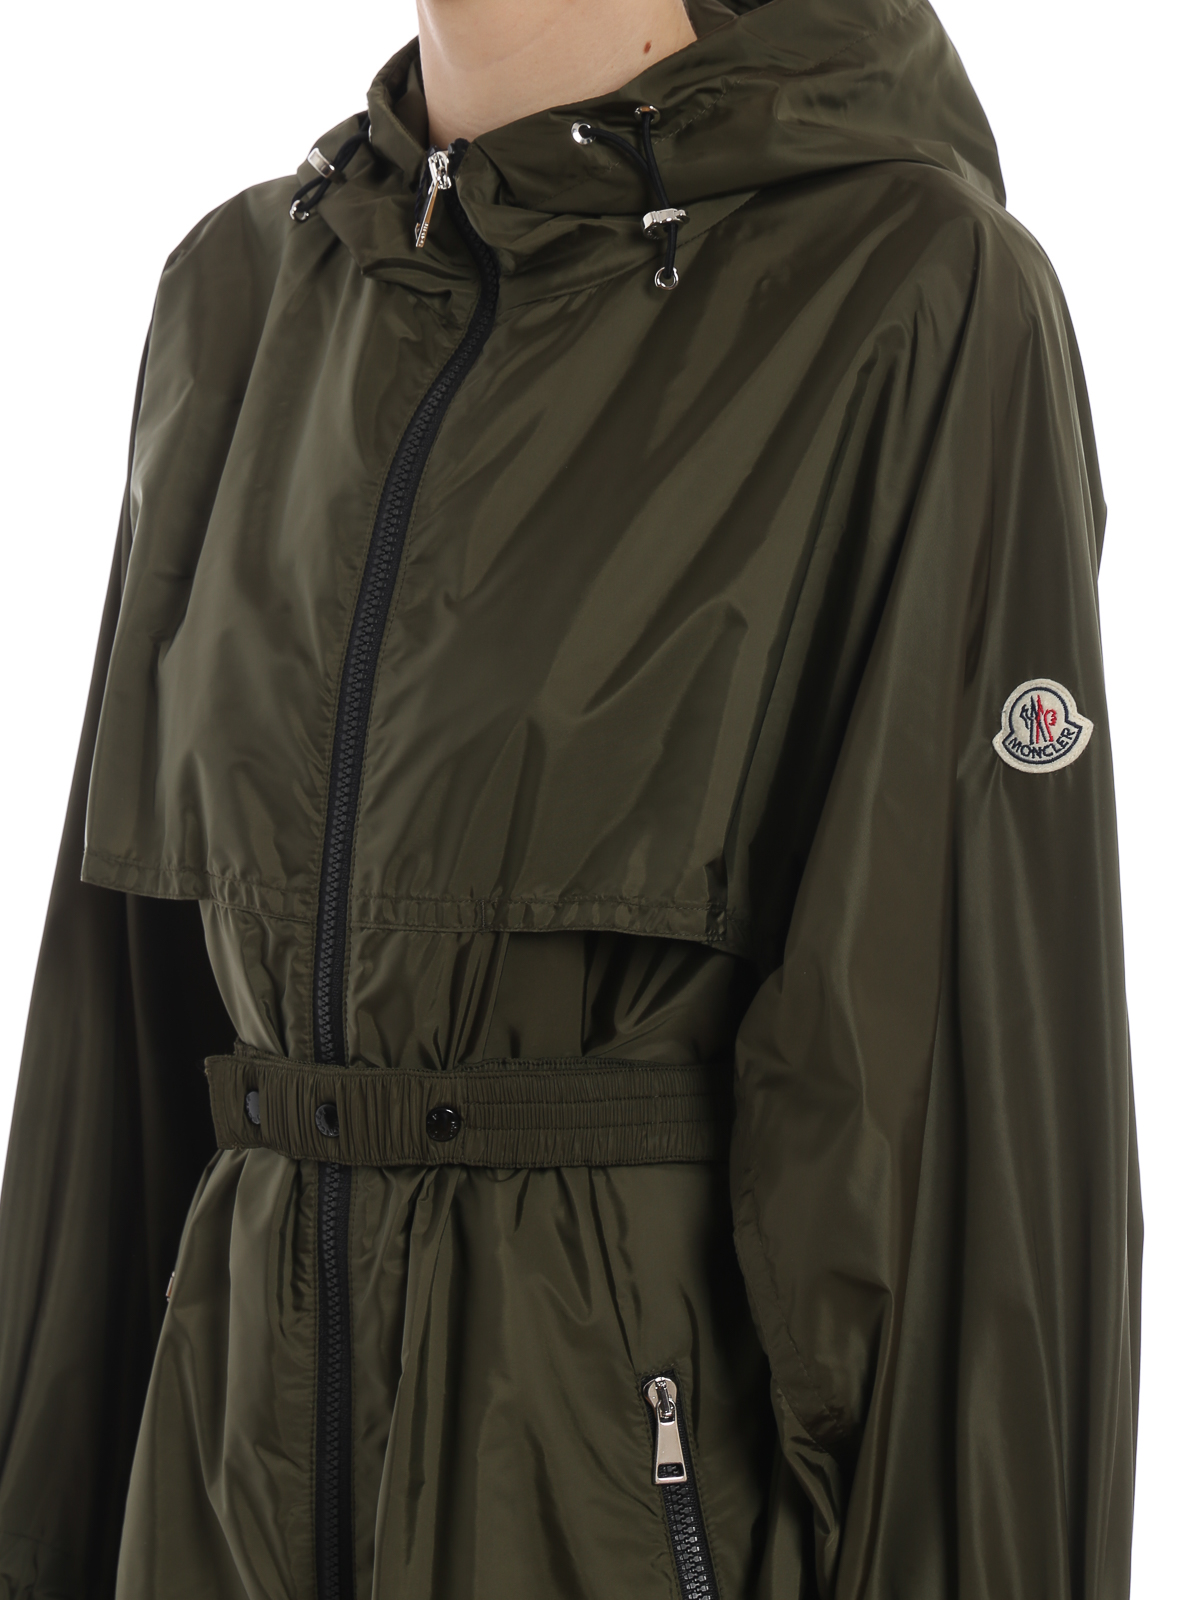 moncler washington raincoat